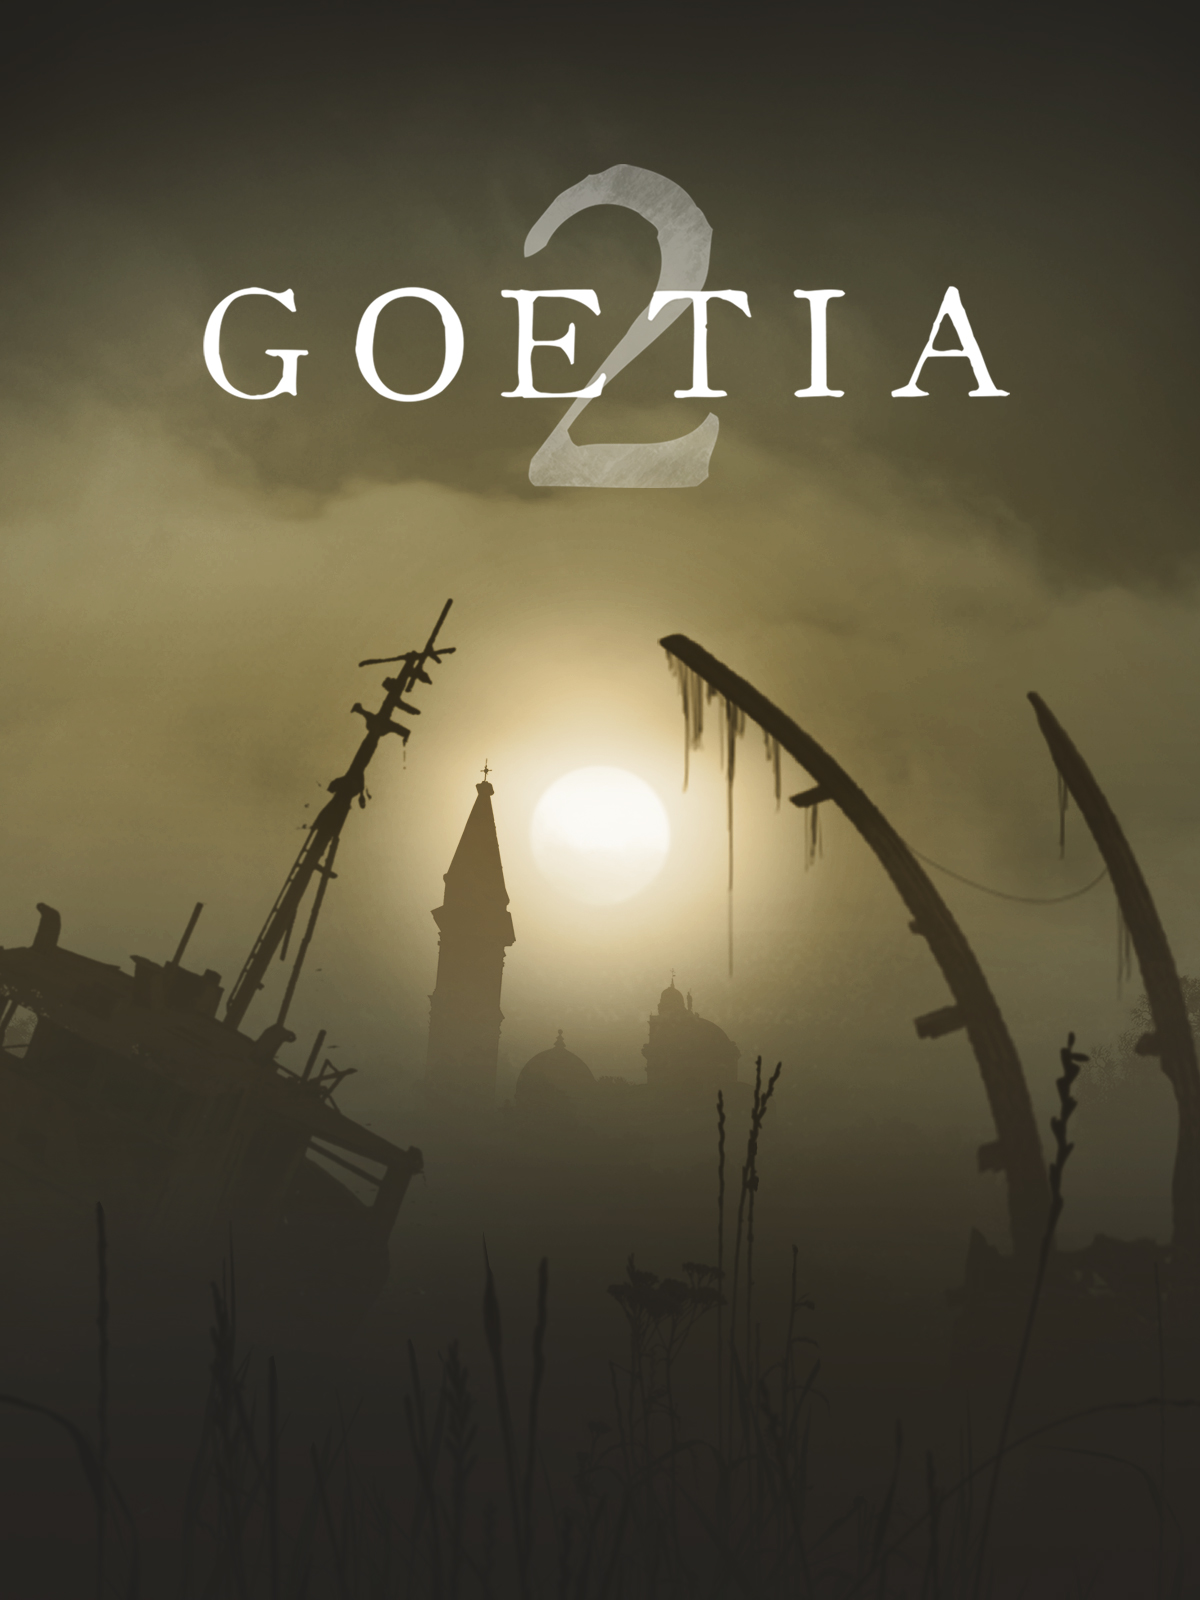 Goetia 2 (Общий, офлайн)